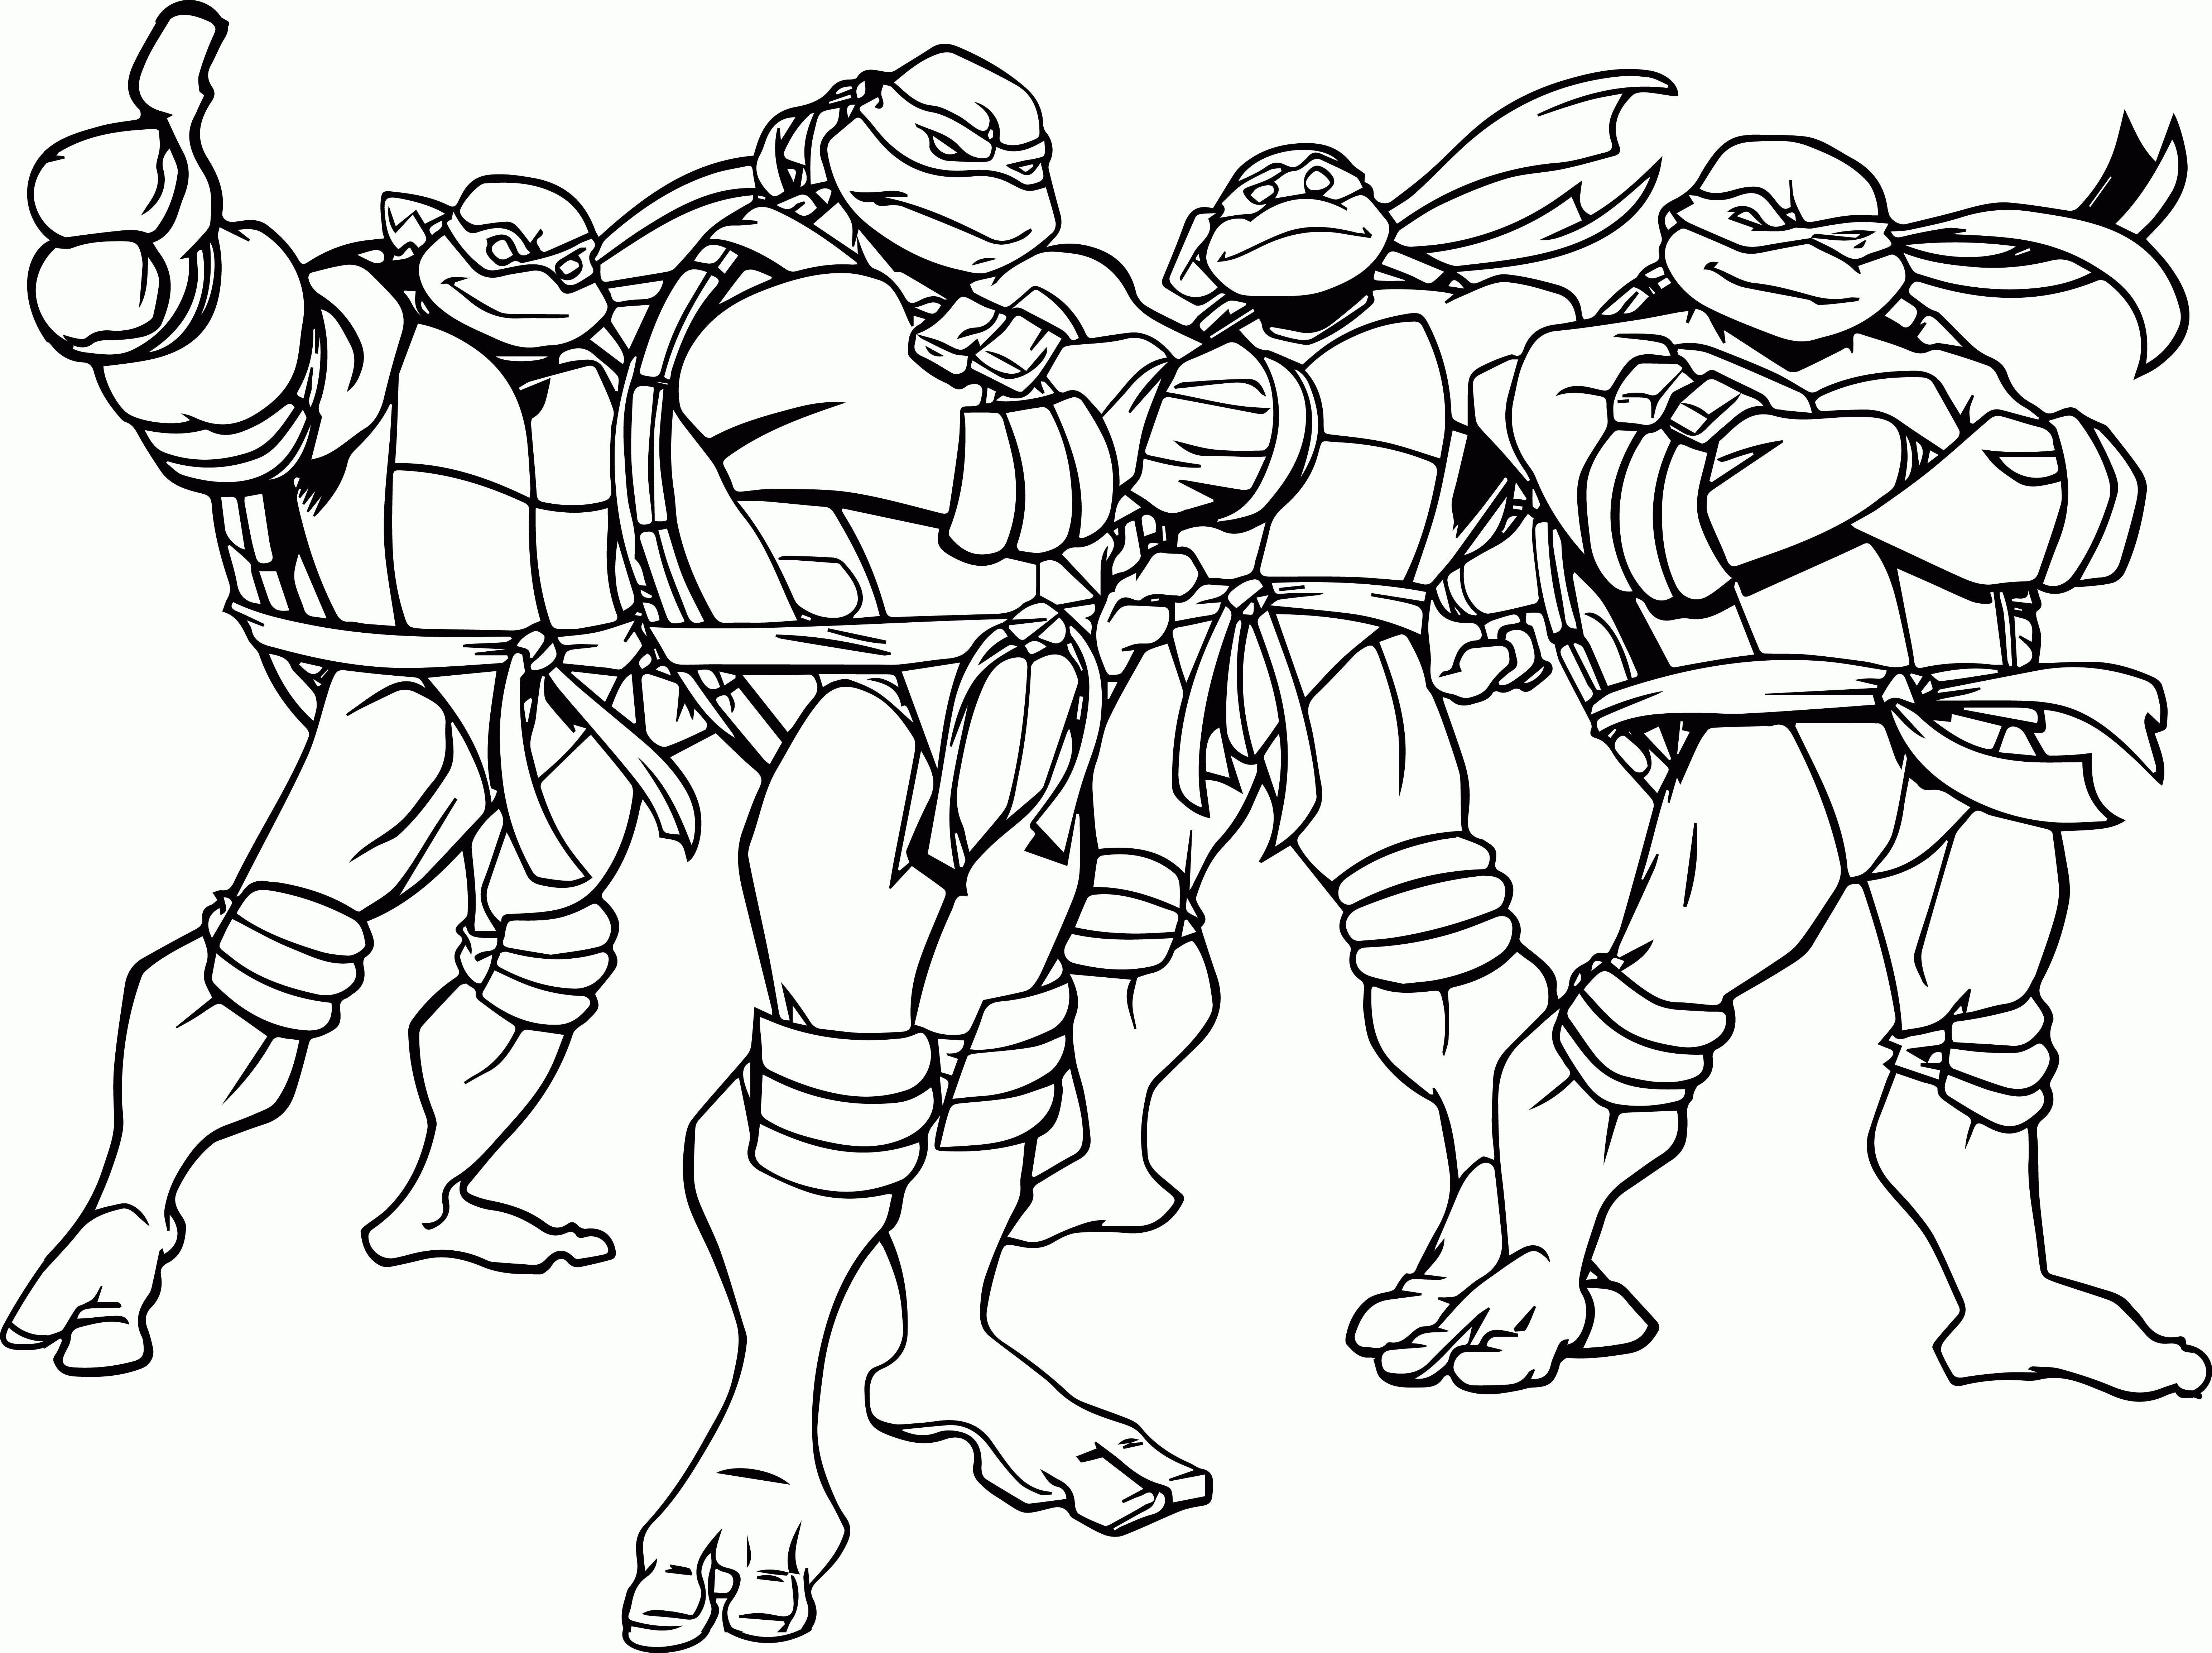 teenage mutant ninja turtles to color craftoholic teenage mutant ninja turtles coloring pages color to mutant teenage ninja turtles 